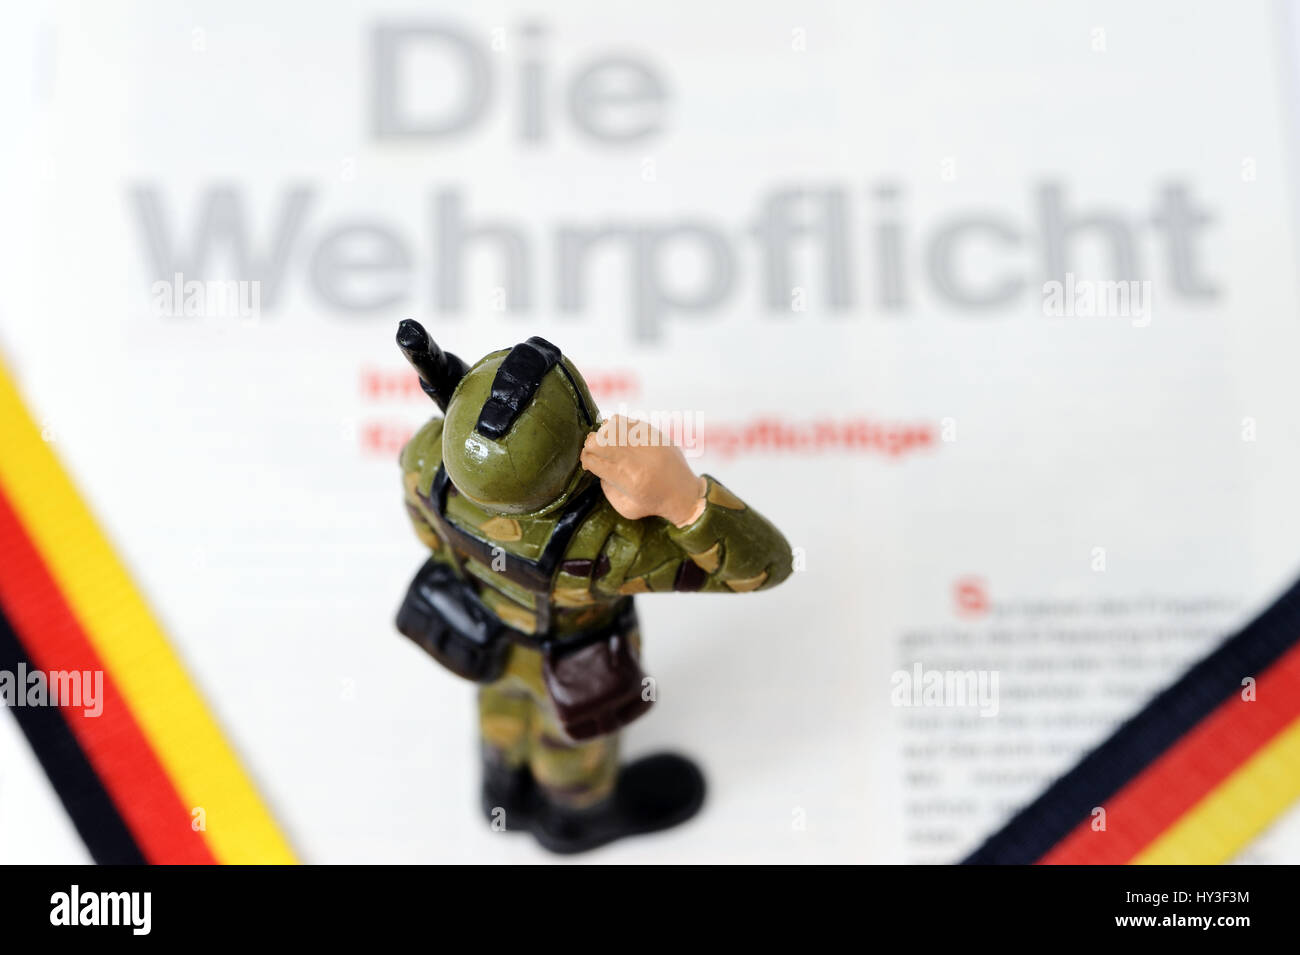 La sospensione della coscrizione in Germania, Aussetzung der Wehrpflicht in Deutschland Foto Stock